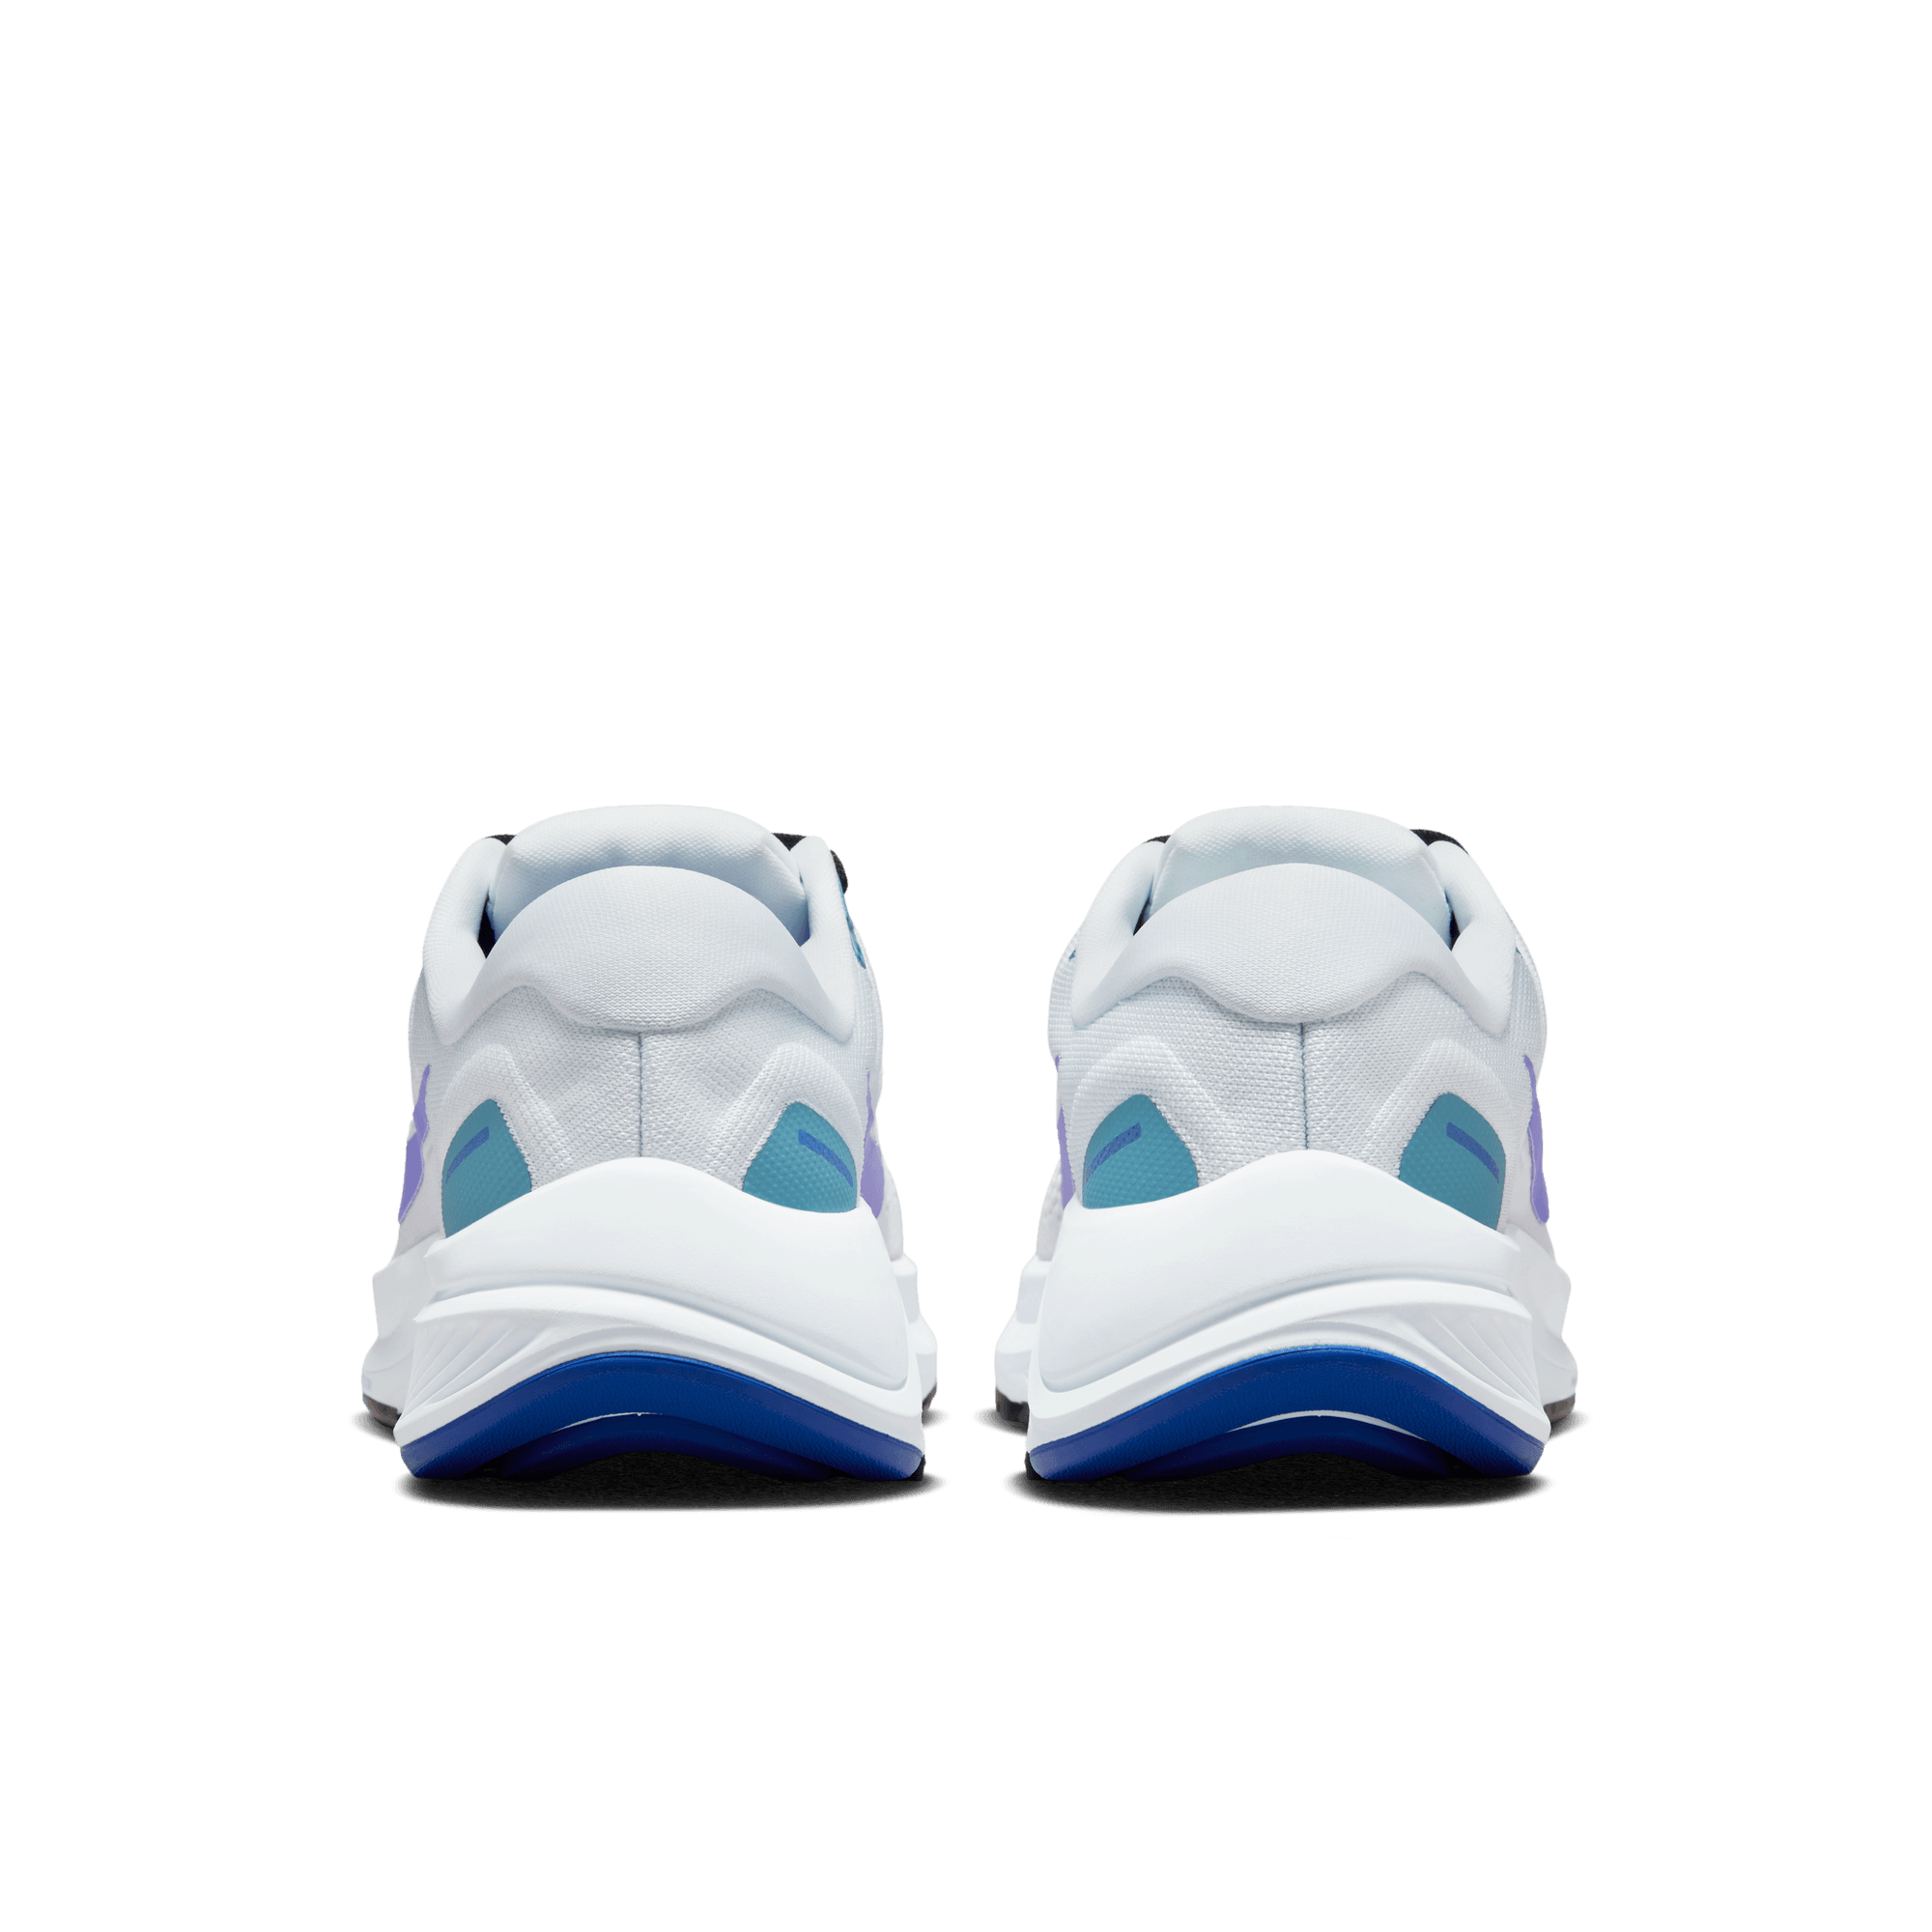 zapatillas de running Nike hombre apoyo talón talla 27.5 “Have A Good Game”  White/Multi - Nike LeBron 18 Low 'Stewie Griffin' - Color – Tra-incShops